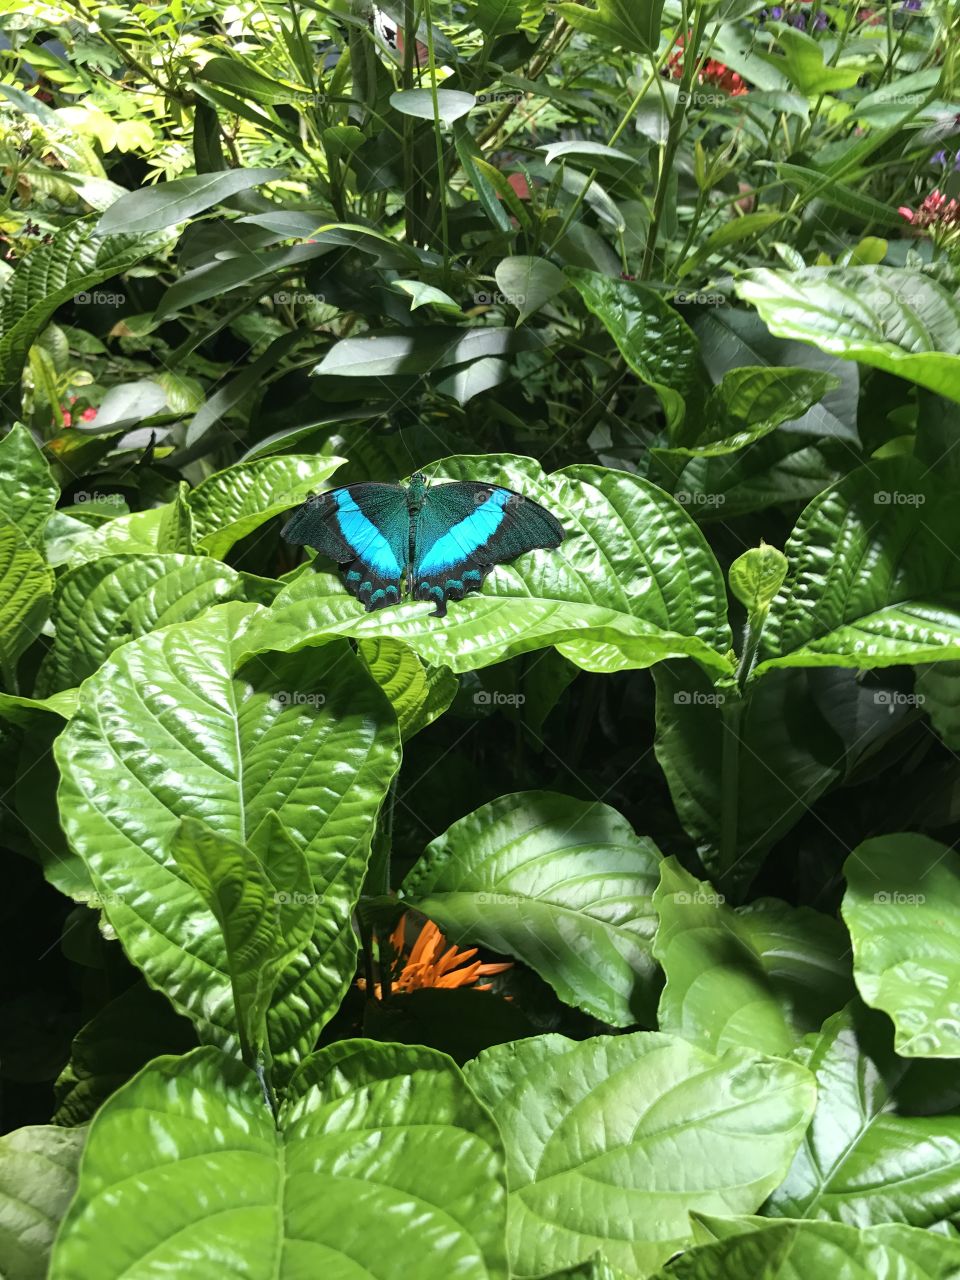 Butterflies on plants